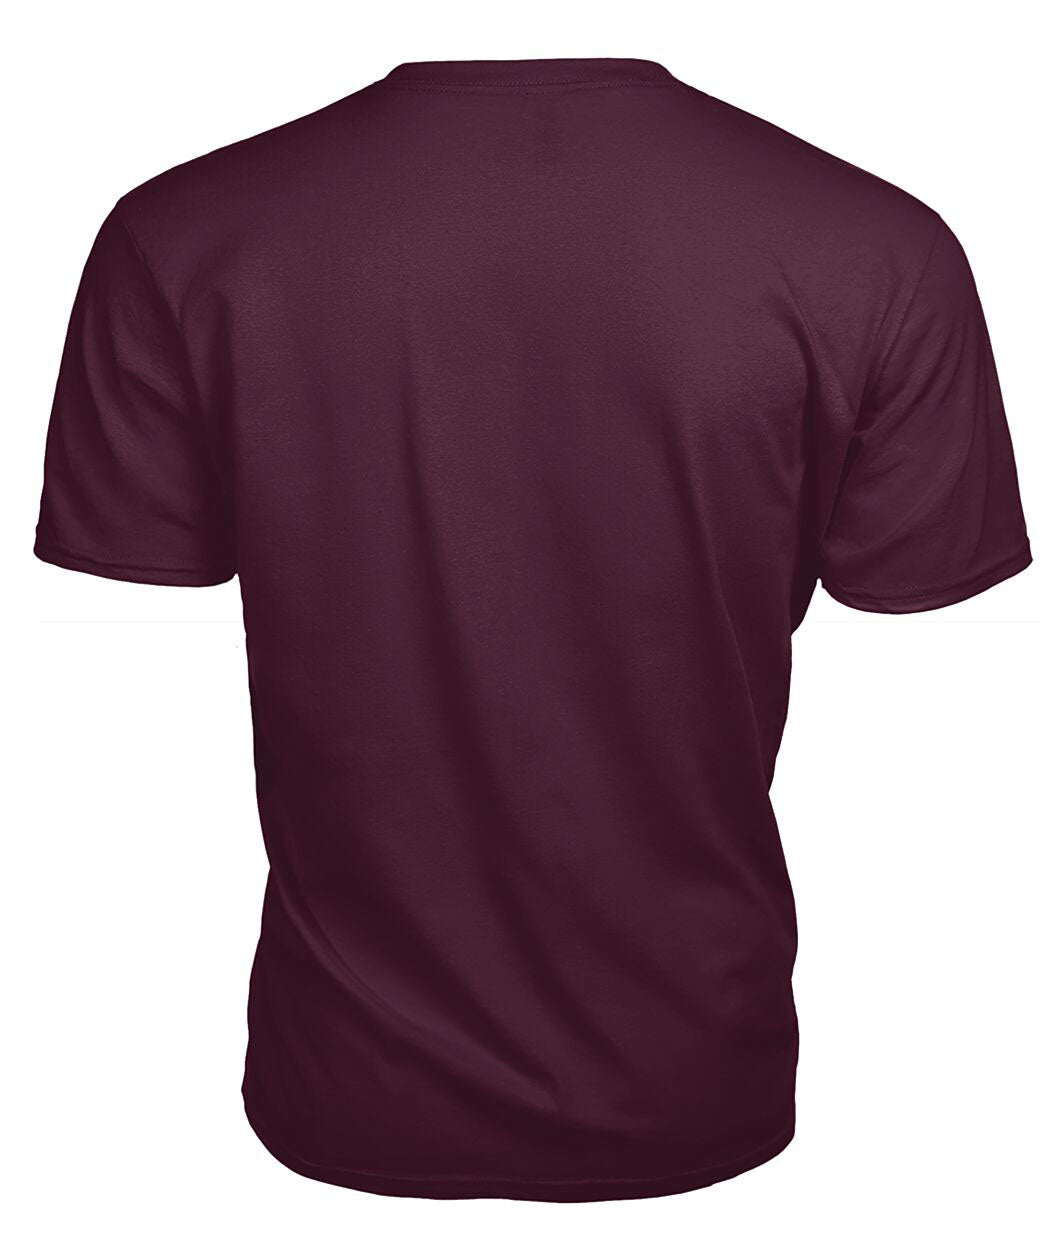 McLachlan Modern Tartan Crest 2D T-shirt - Blood Runs Through My Veins Style